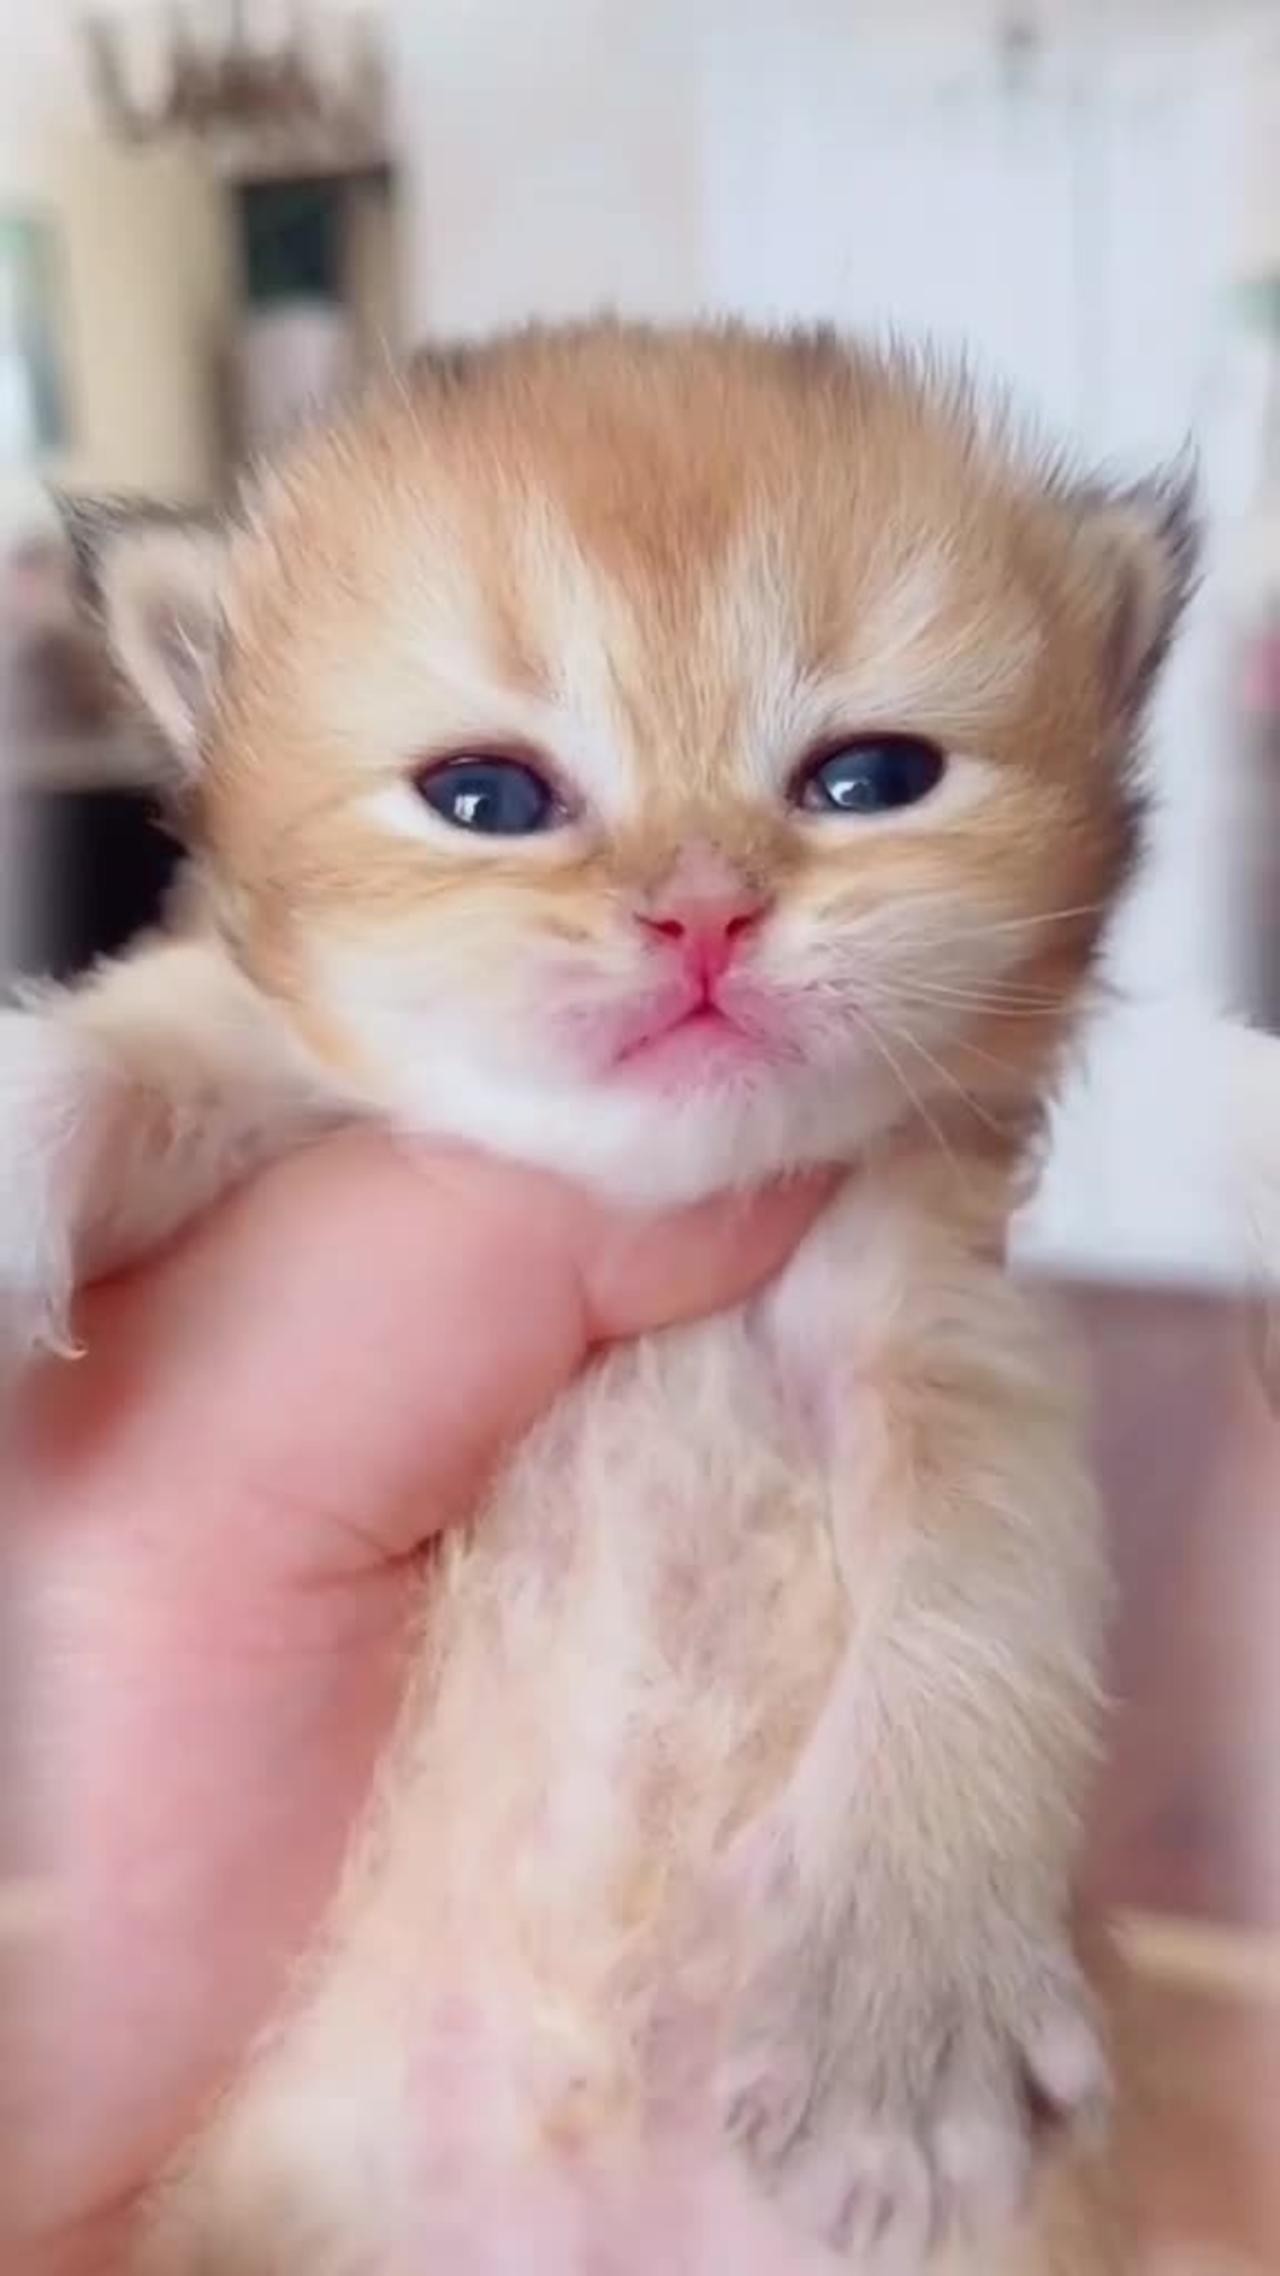 Cute cate 😳😳cute sound